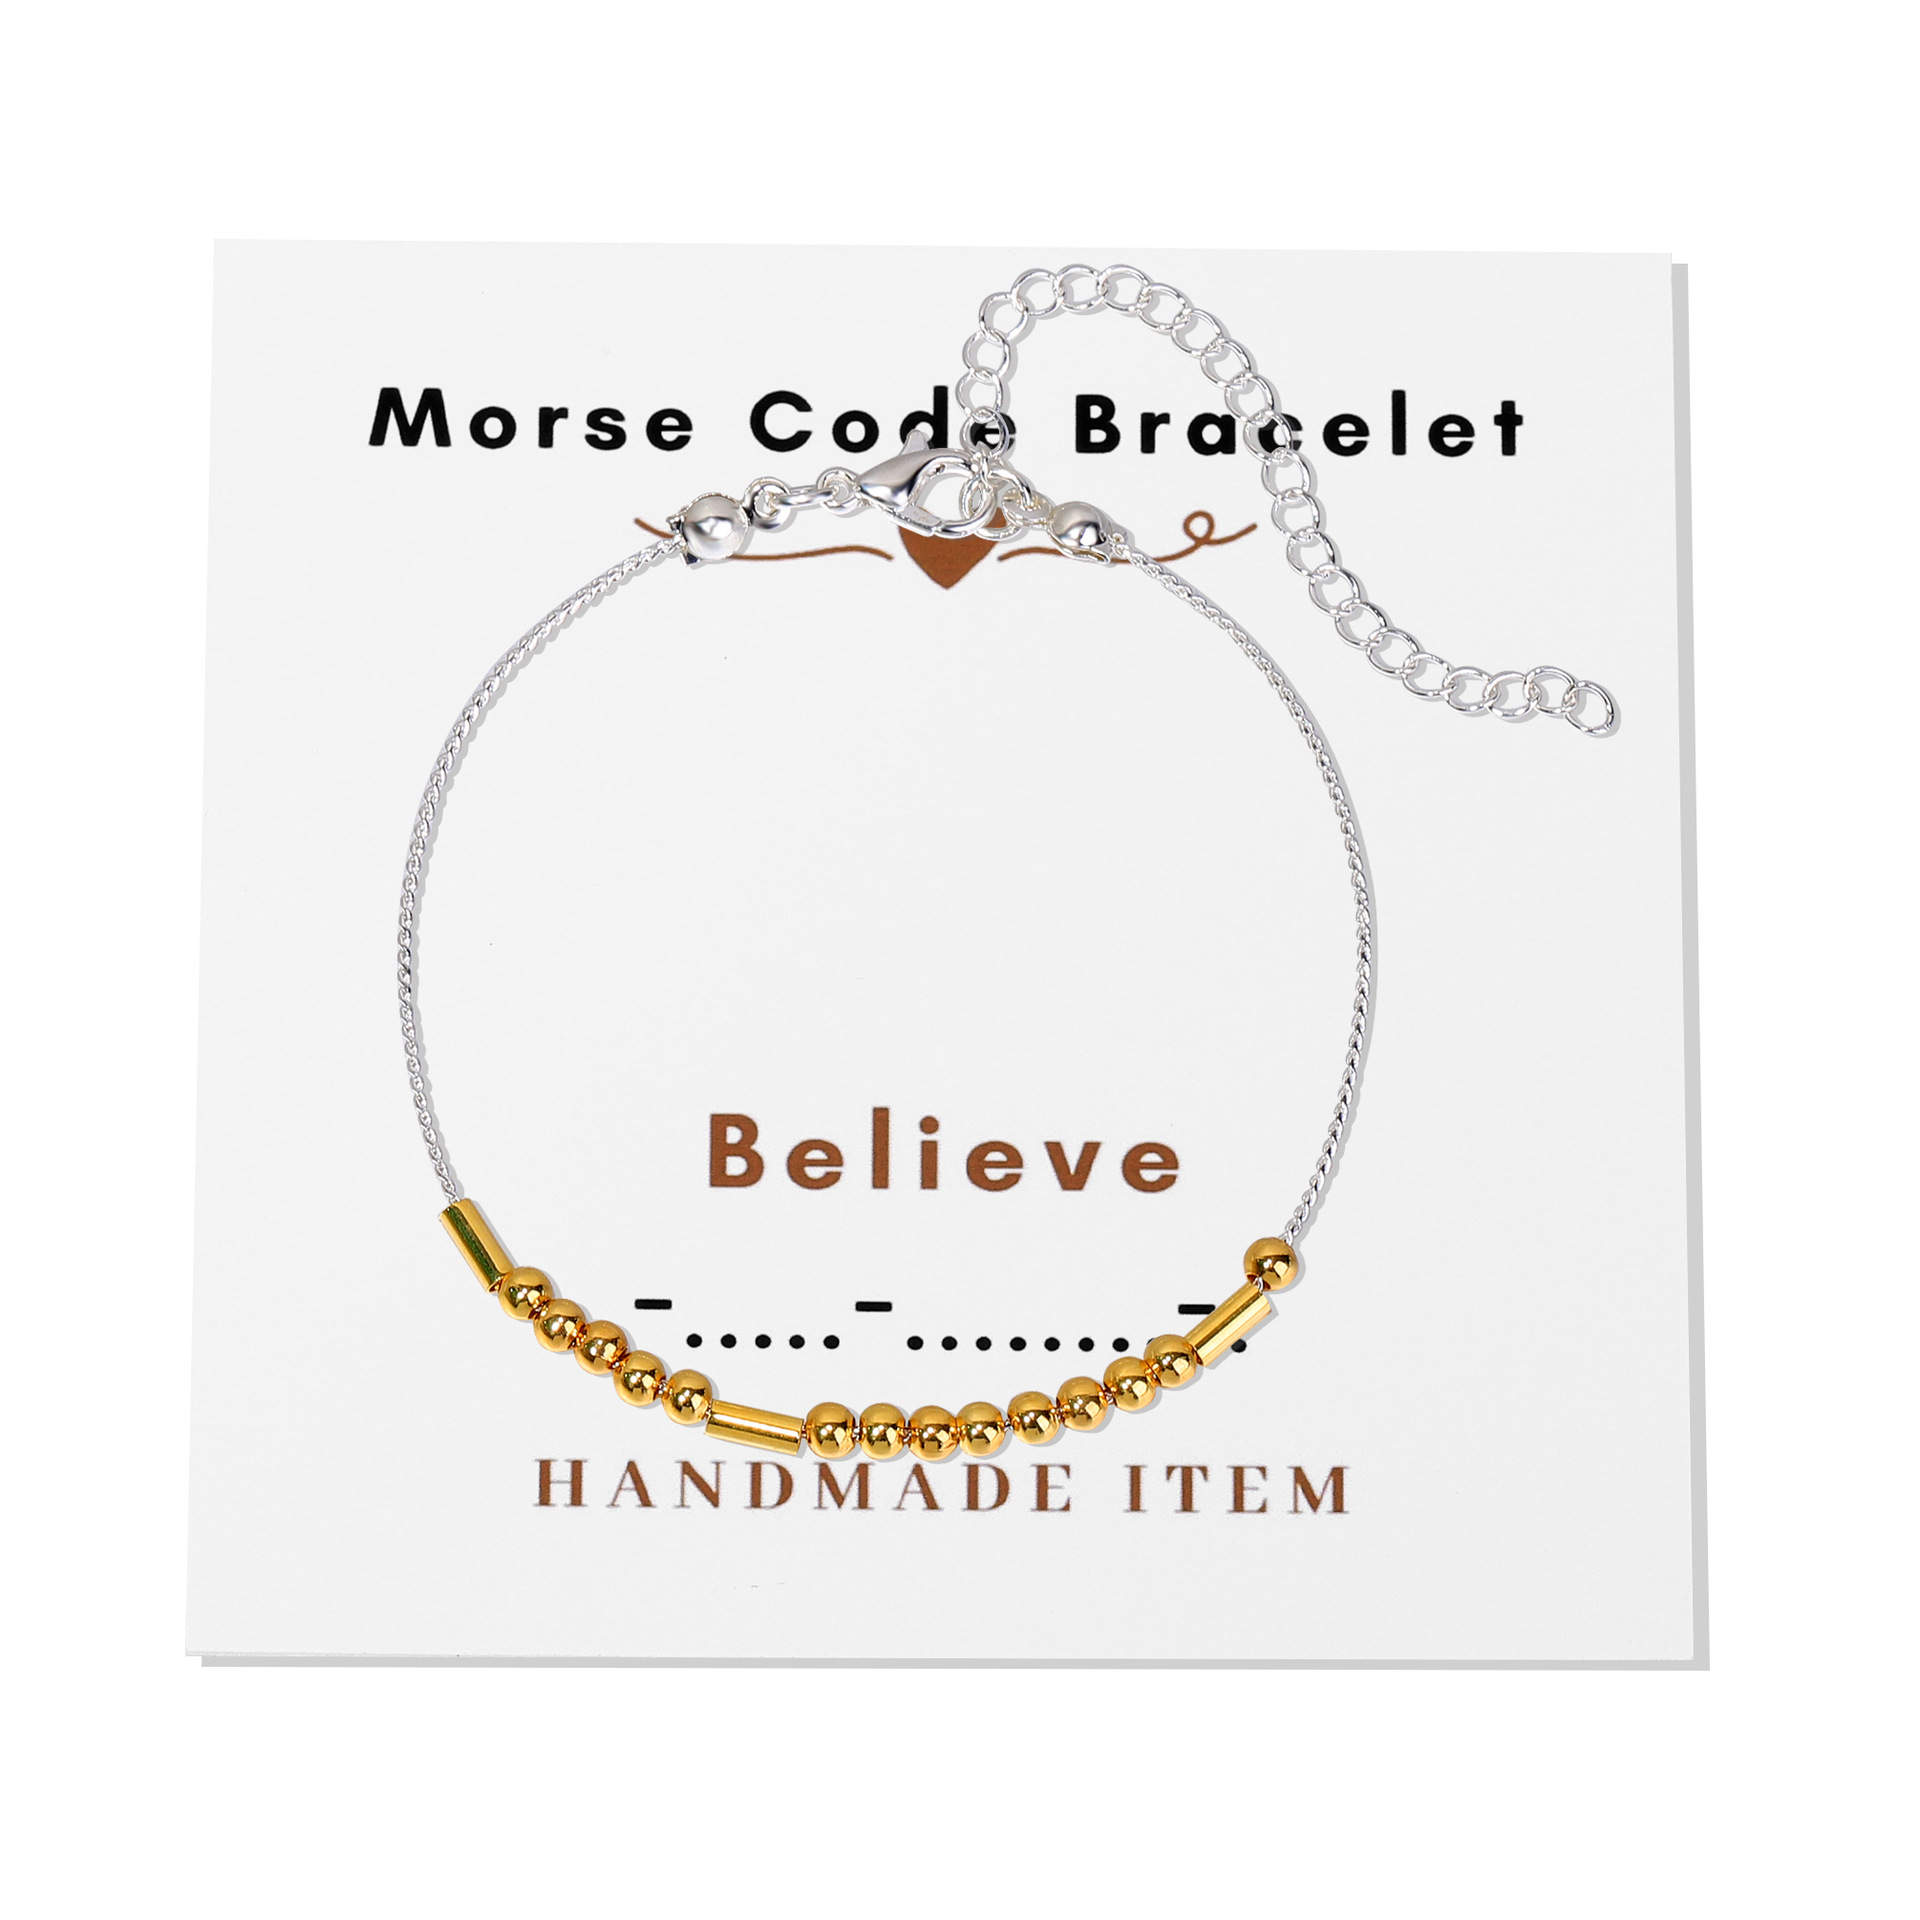 BELIEVE - Morse Code Bracelet